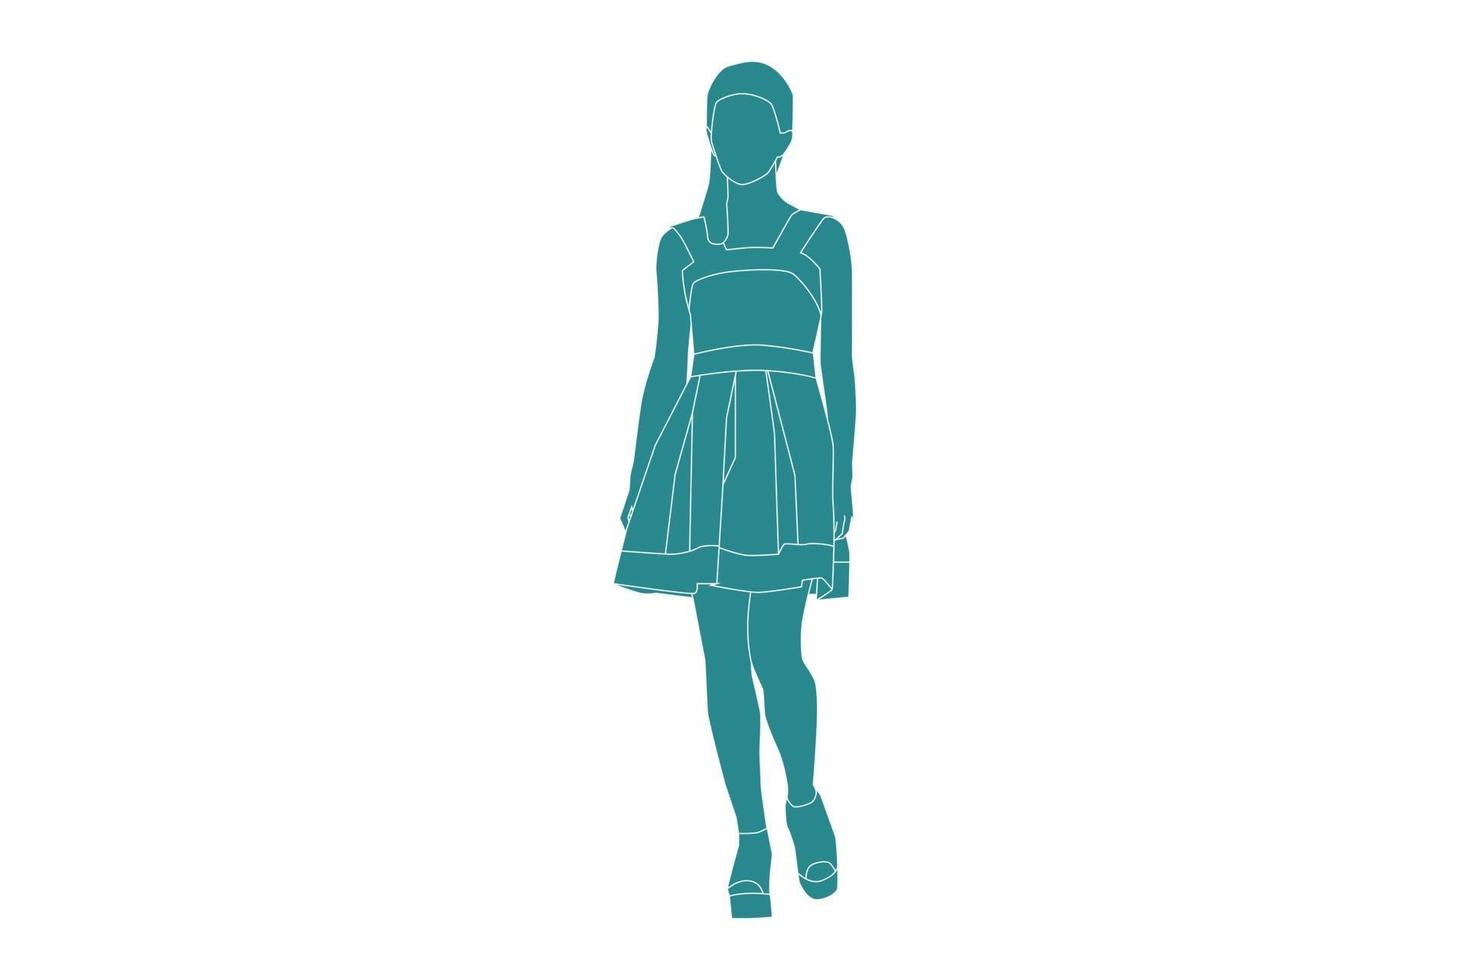 ilustração em vetor de mulher elegante andando na sideroad, estilo simples com contorno